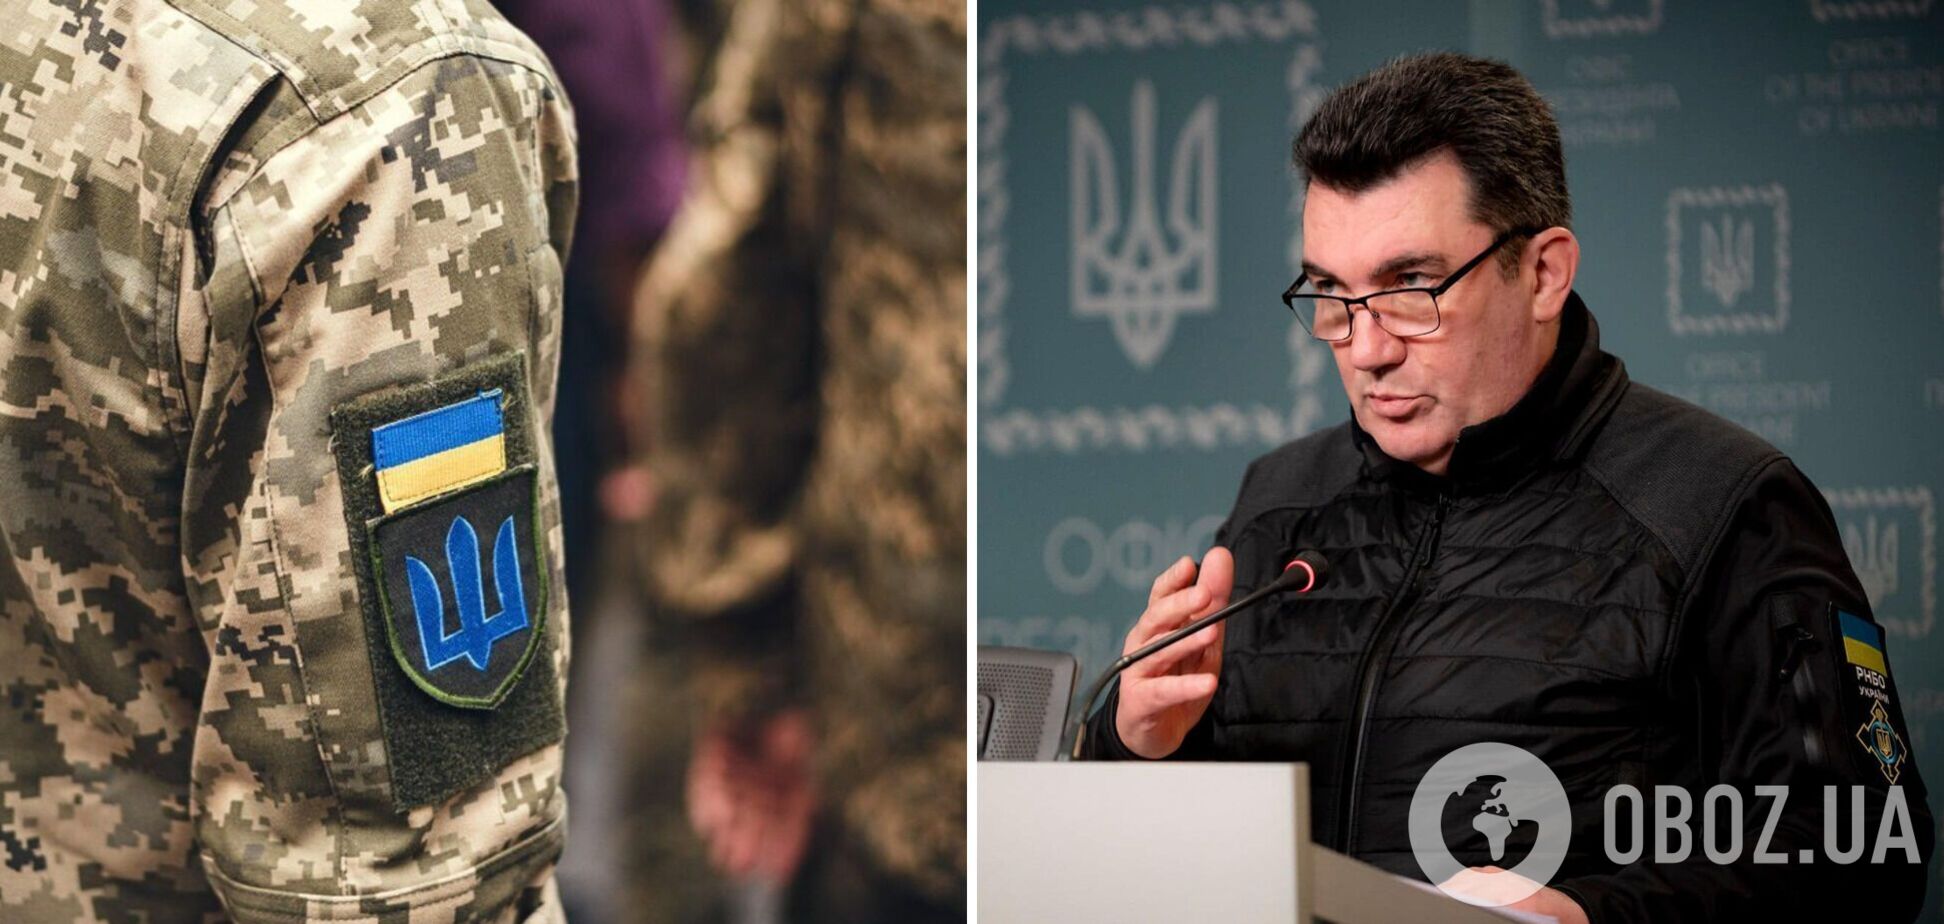 Данилов: в октябре на фронте возможна эскалация конфликта, но ВСУ готовы